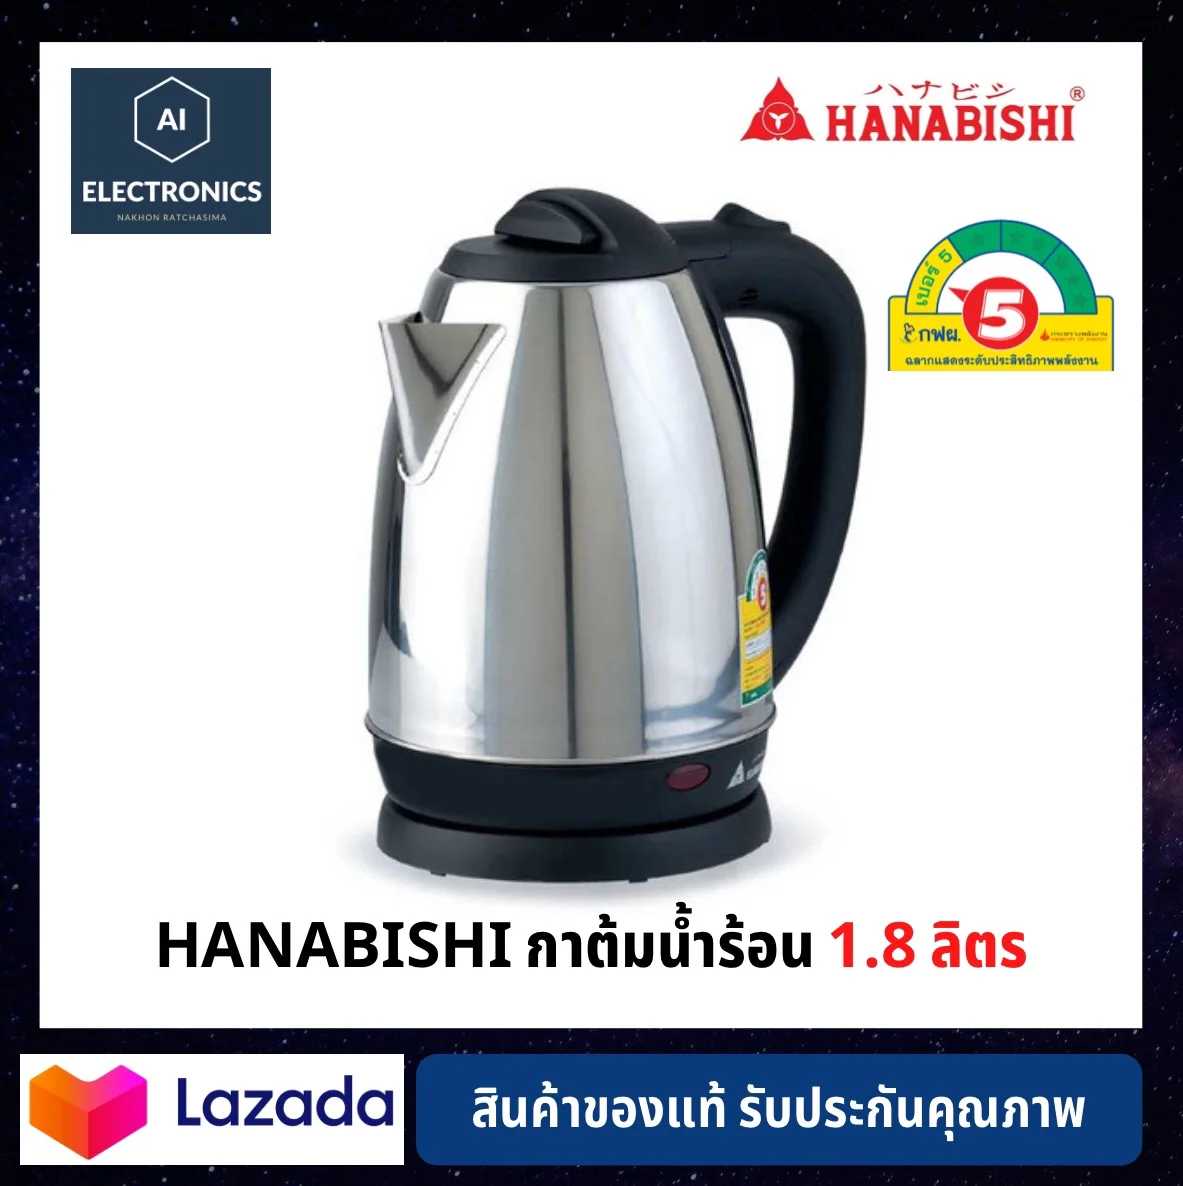 🔥ประหยัดไฟเบอร์ 5🔥 Hanabishi กาต้มน้ำร้อน 1.8 ลิตร รุ่น HMK-6209